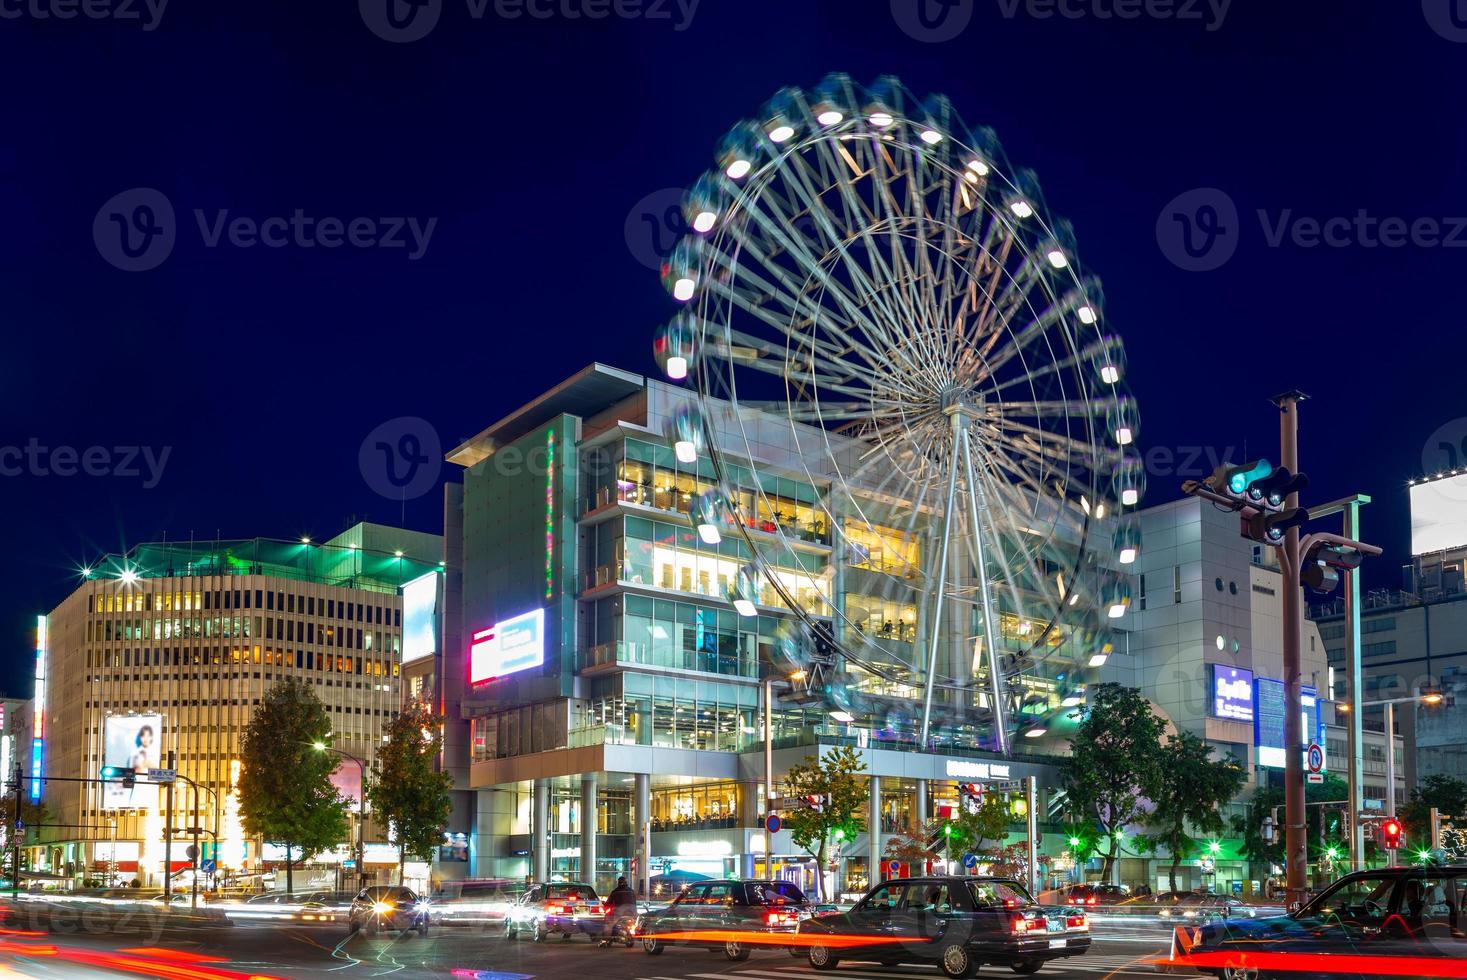 gatuvy av Nagoya med pariserhjul i Japan foto